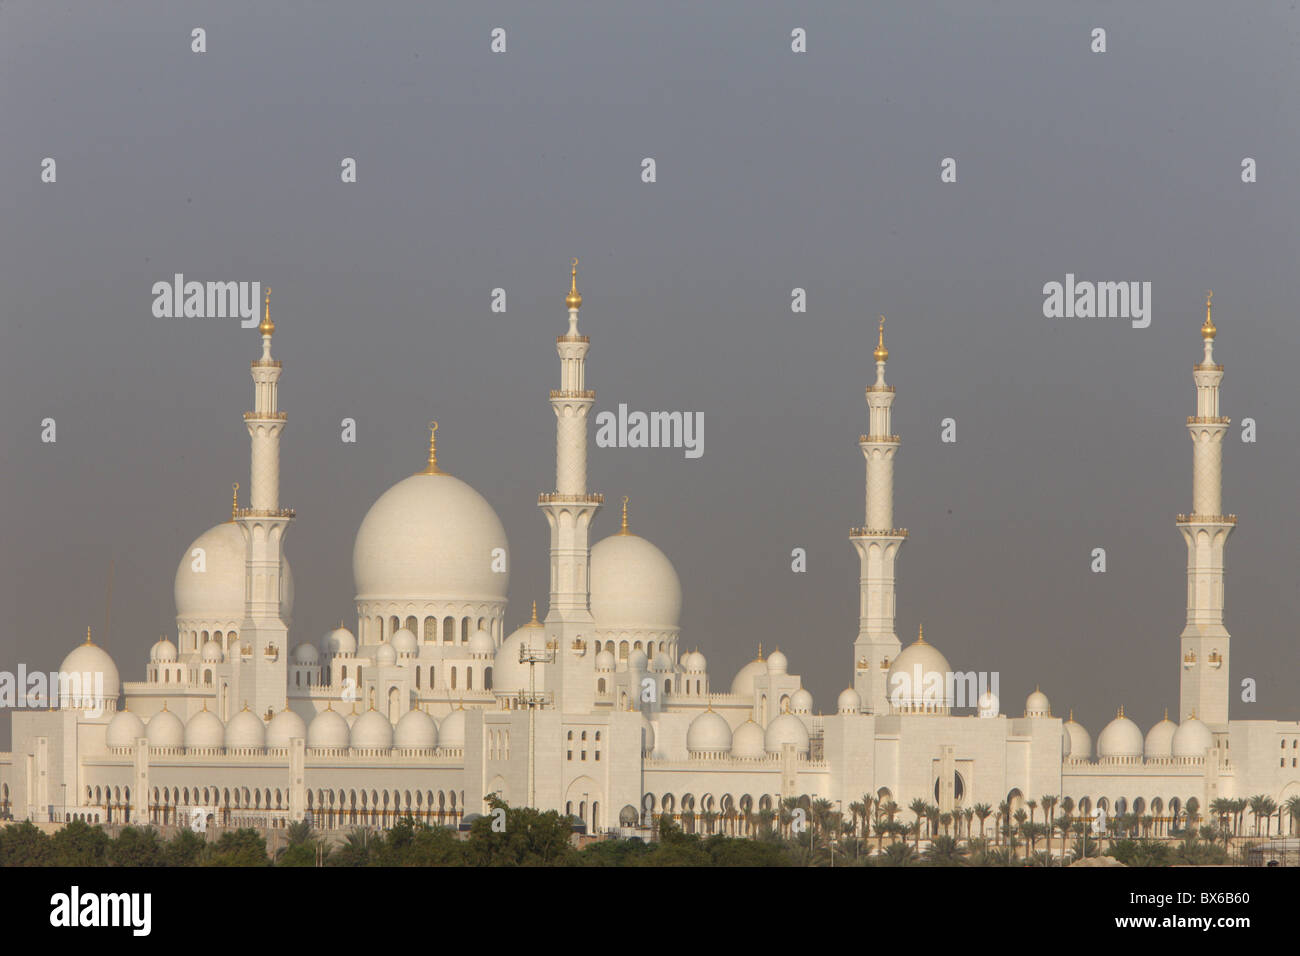 Sheikh Zayed Grand Moschee, die größte Moschee in den Vereinigten Arabischen Emiraten und einer der 10 größten Moscheen der Welt, Abu Dhabi, Vereinigte Arabische Emirate Stockfoto